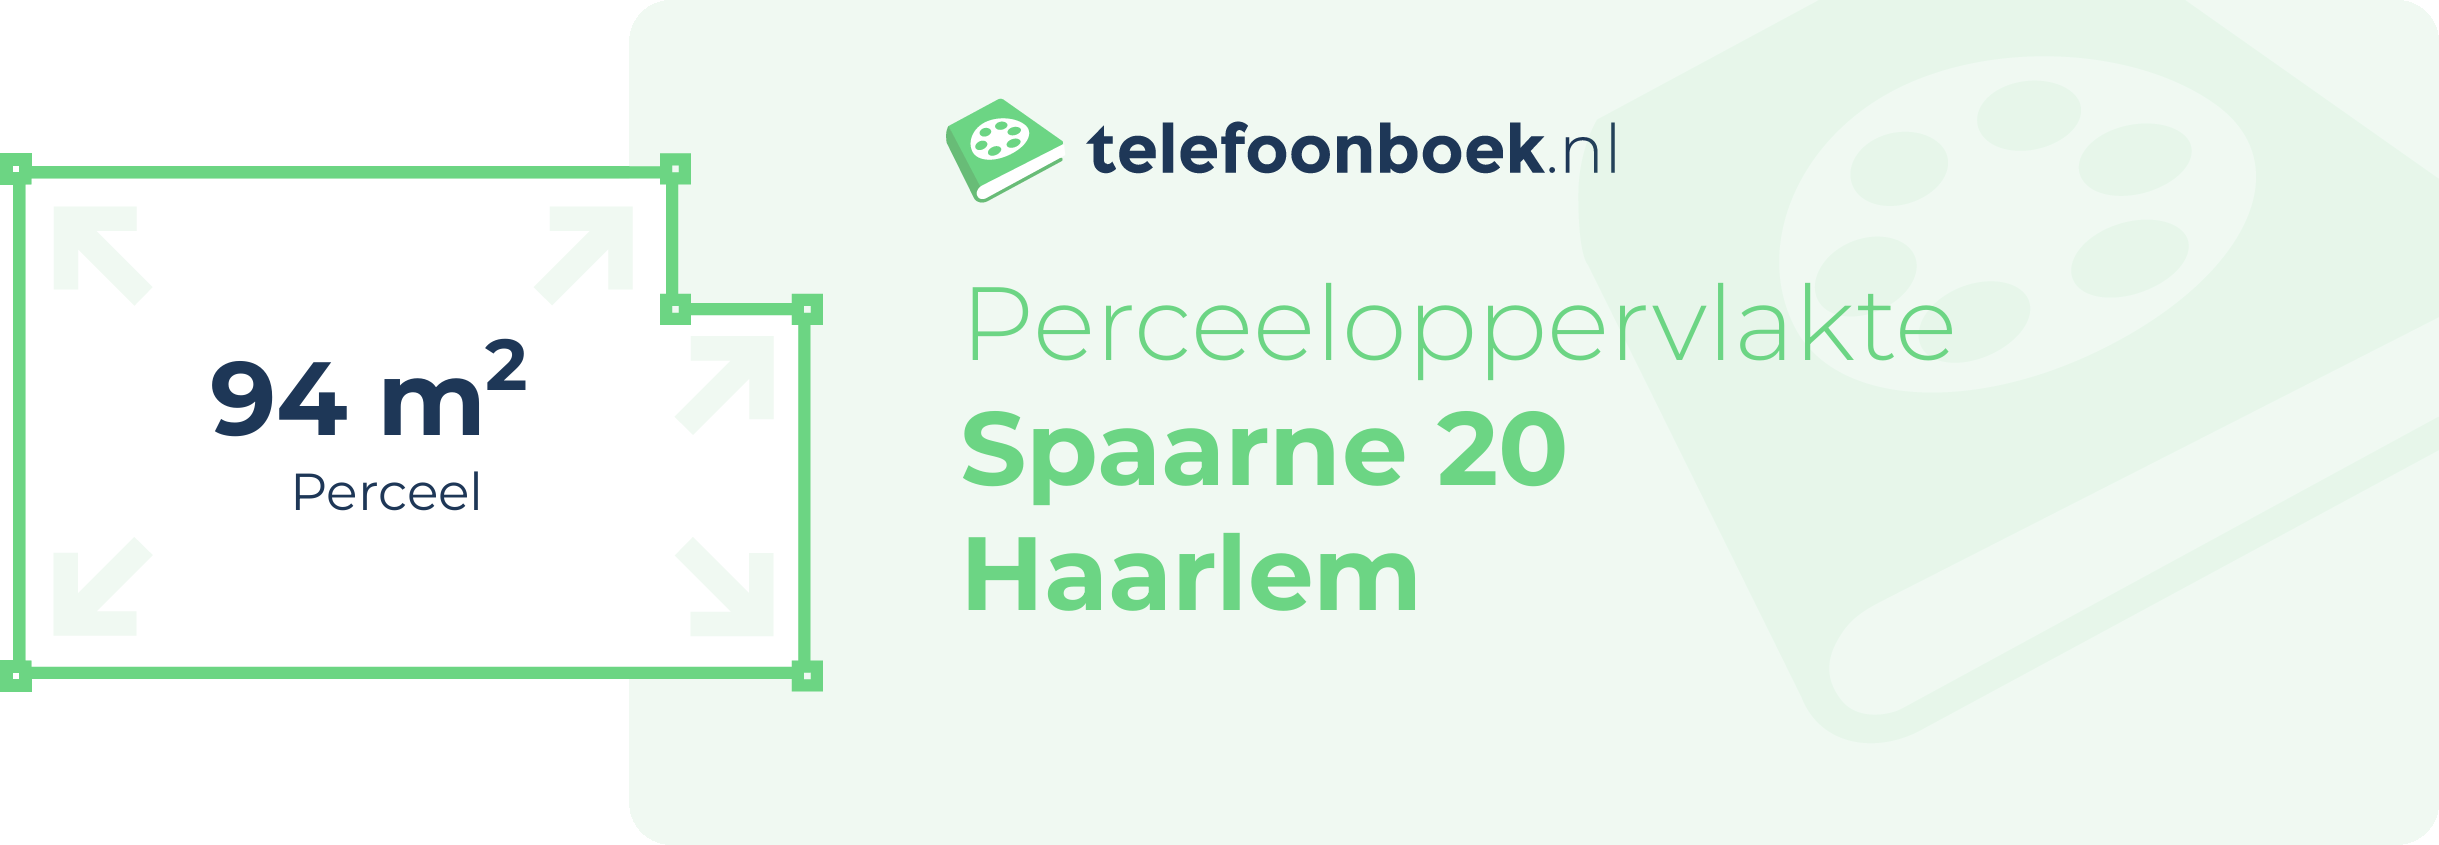 Perceeloppervlakte Spaarne 20 Haarlem